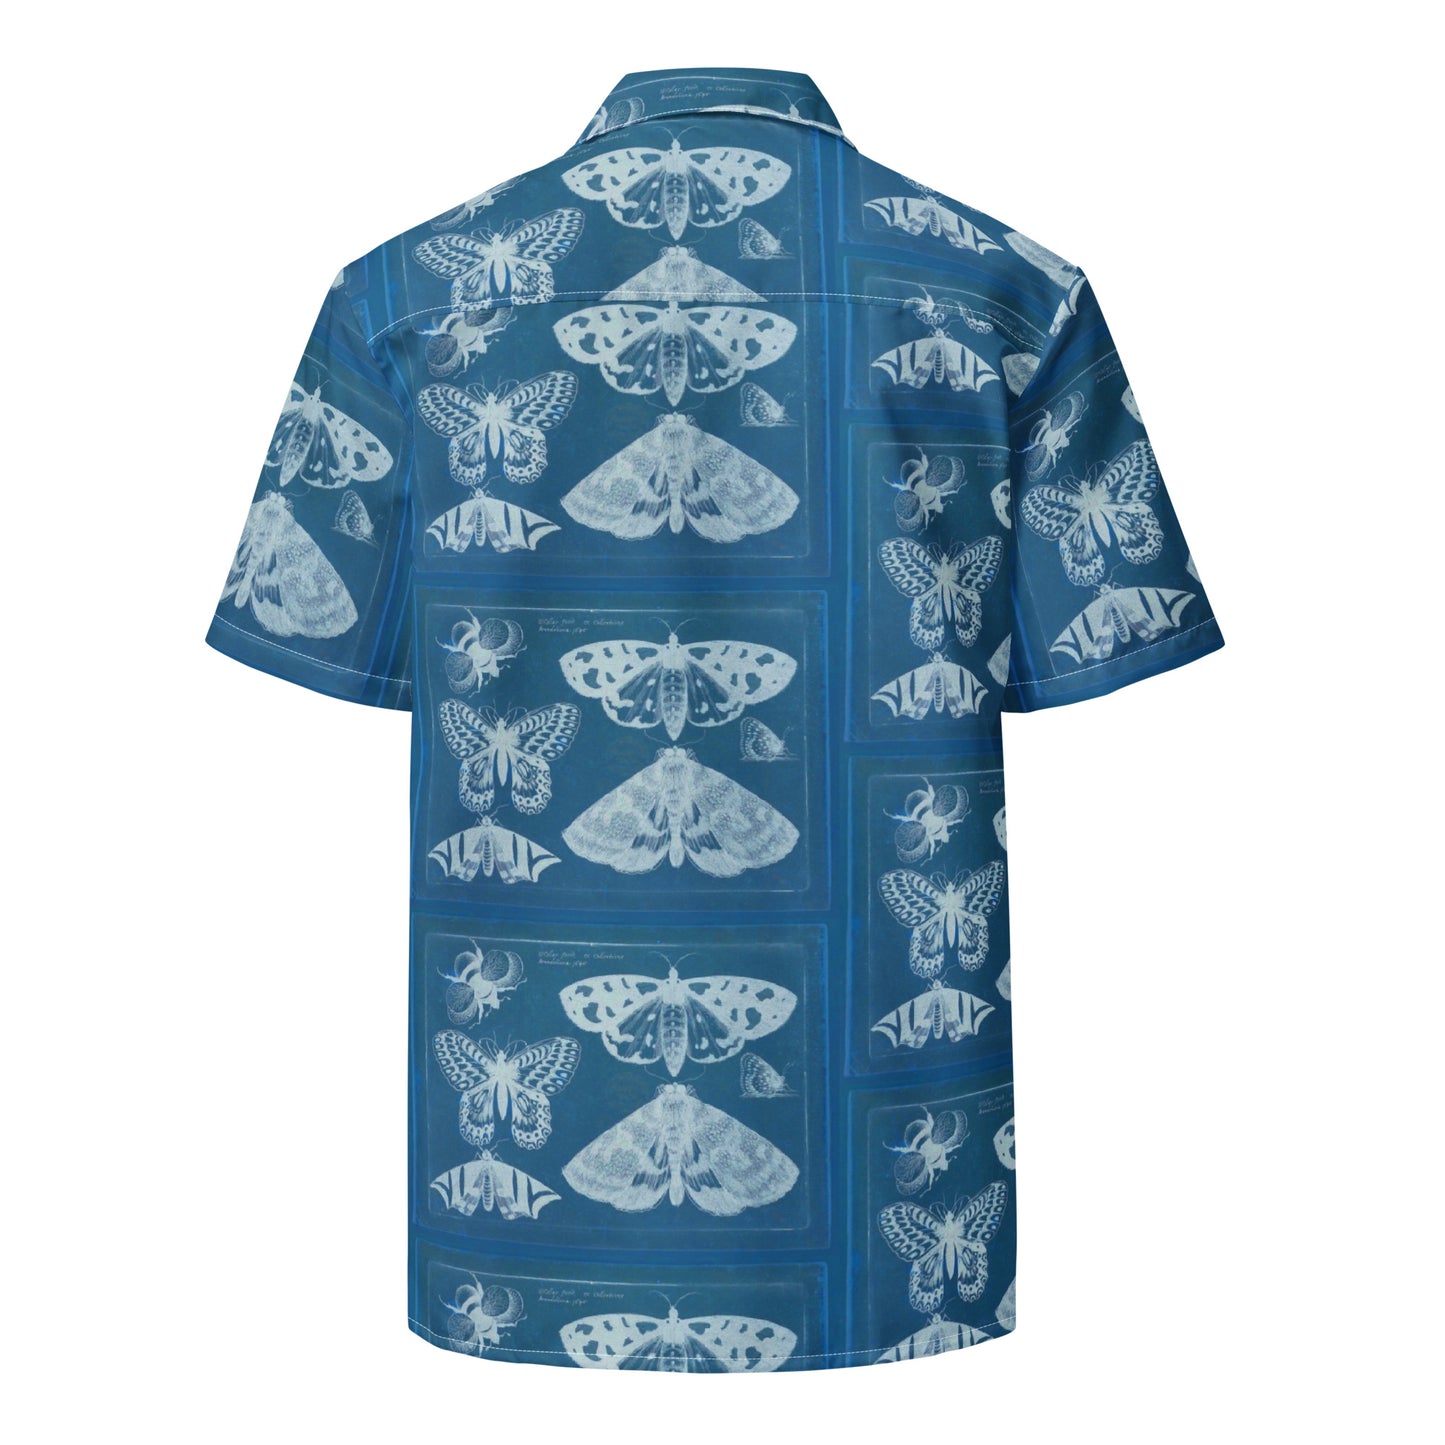 Butterflies & Bees Print Unisex Button Down Shirt